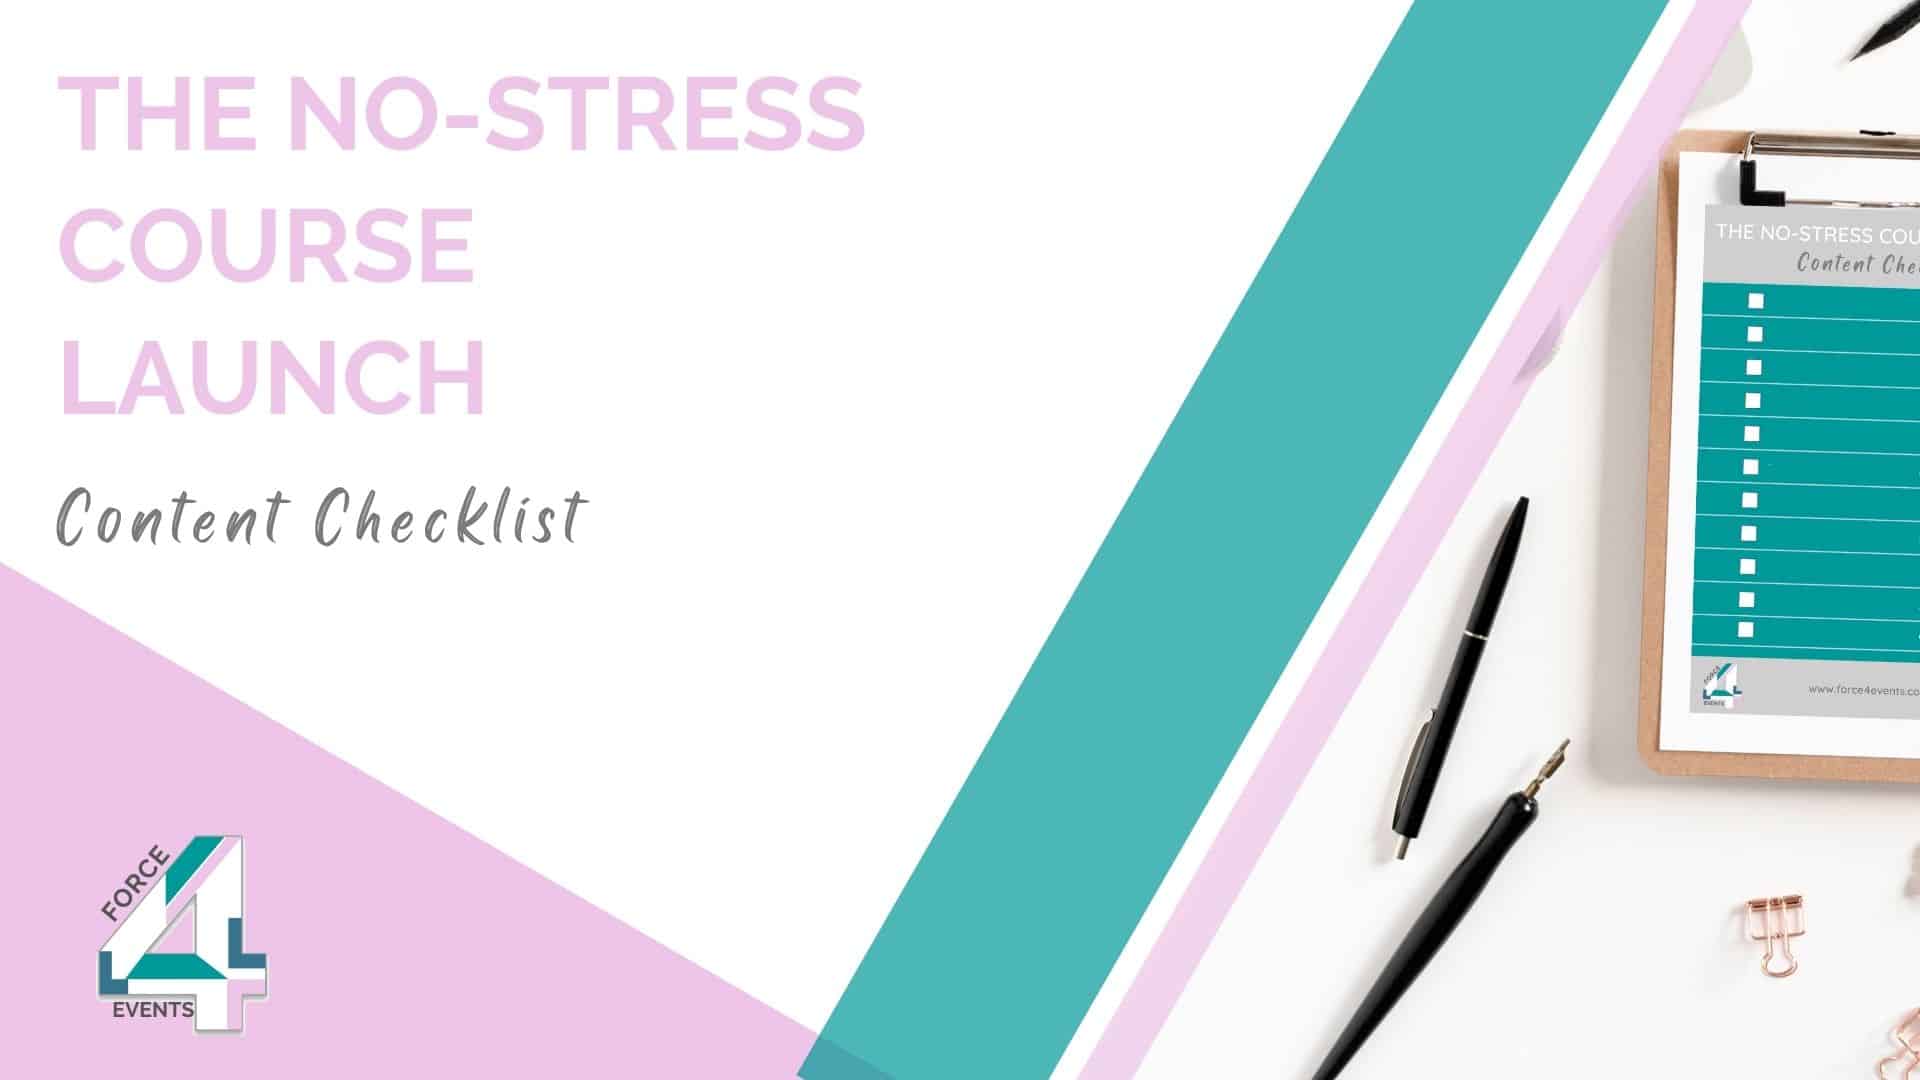 The No-Stress Checklist